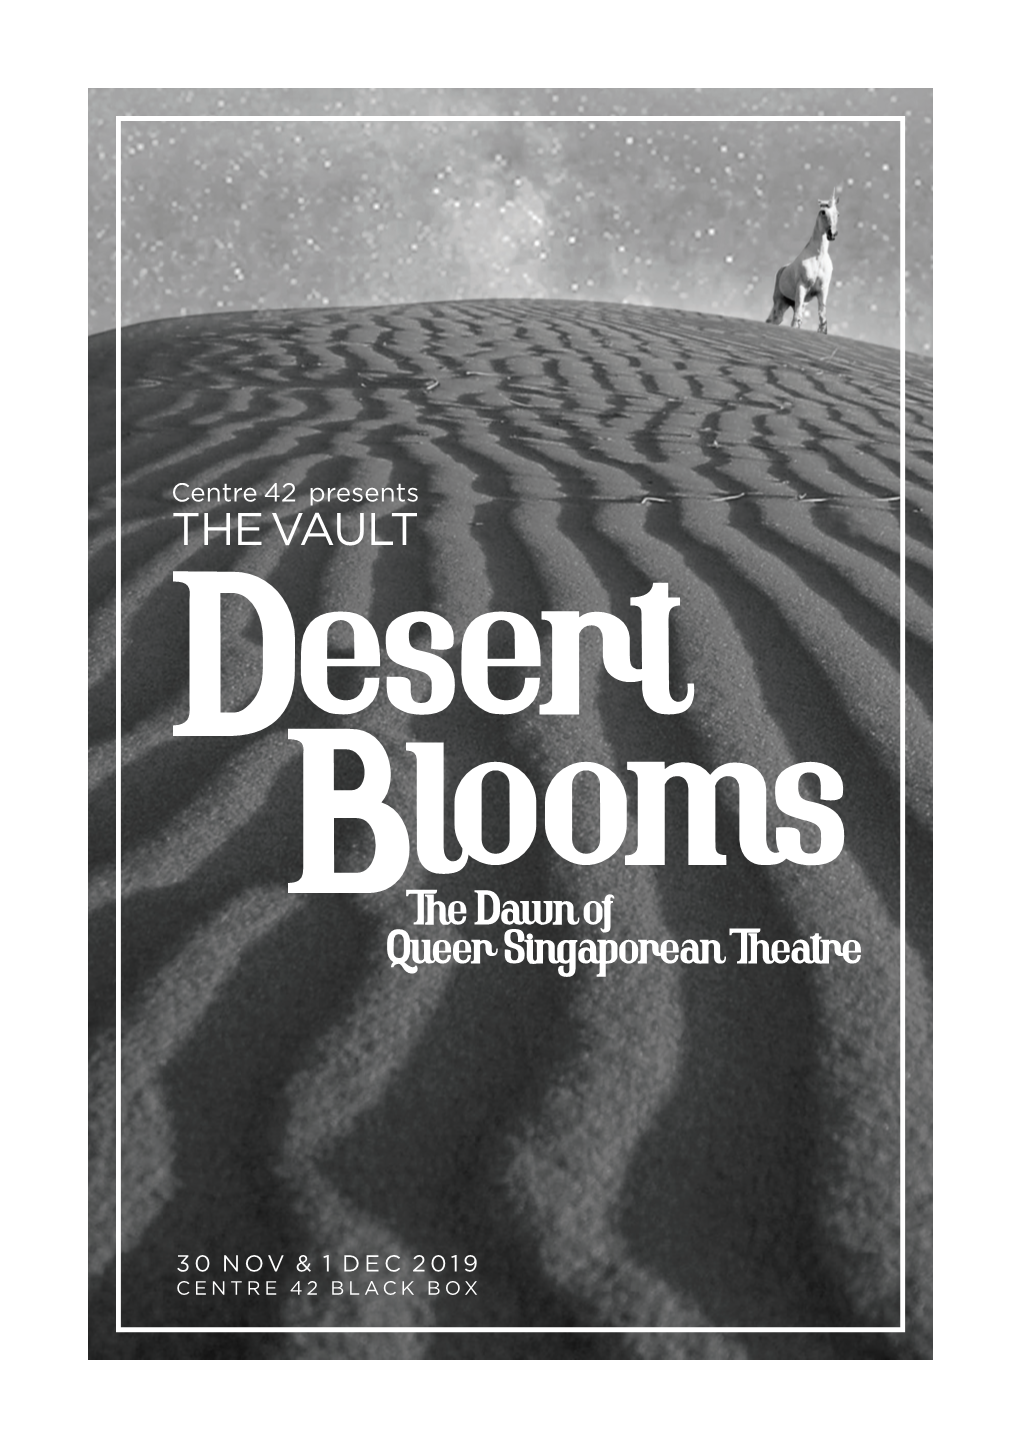 THE VAULT Desert Ooms Bthel Dawn of Queer Singaporean Theatre